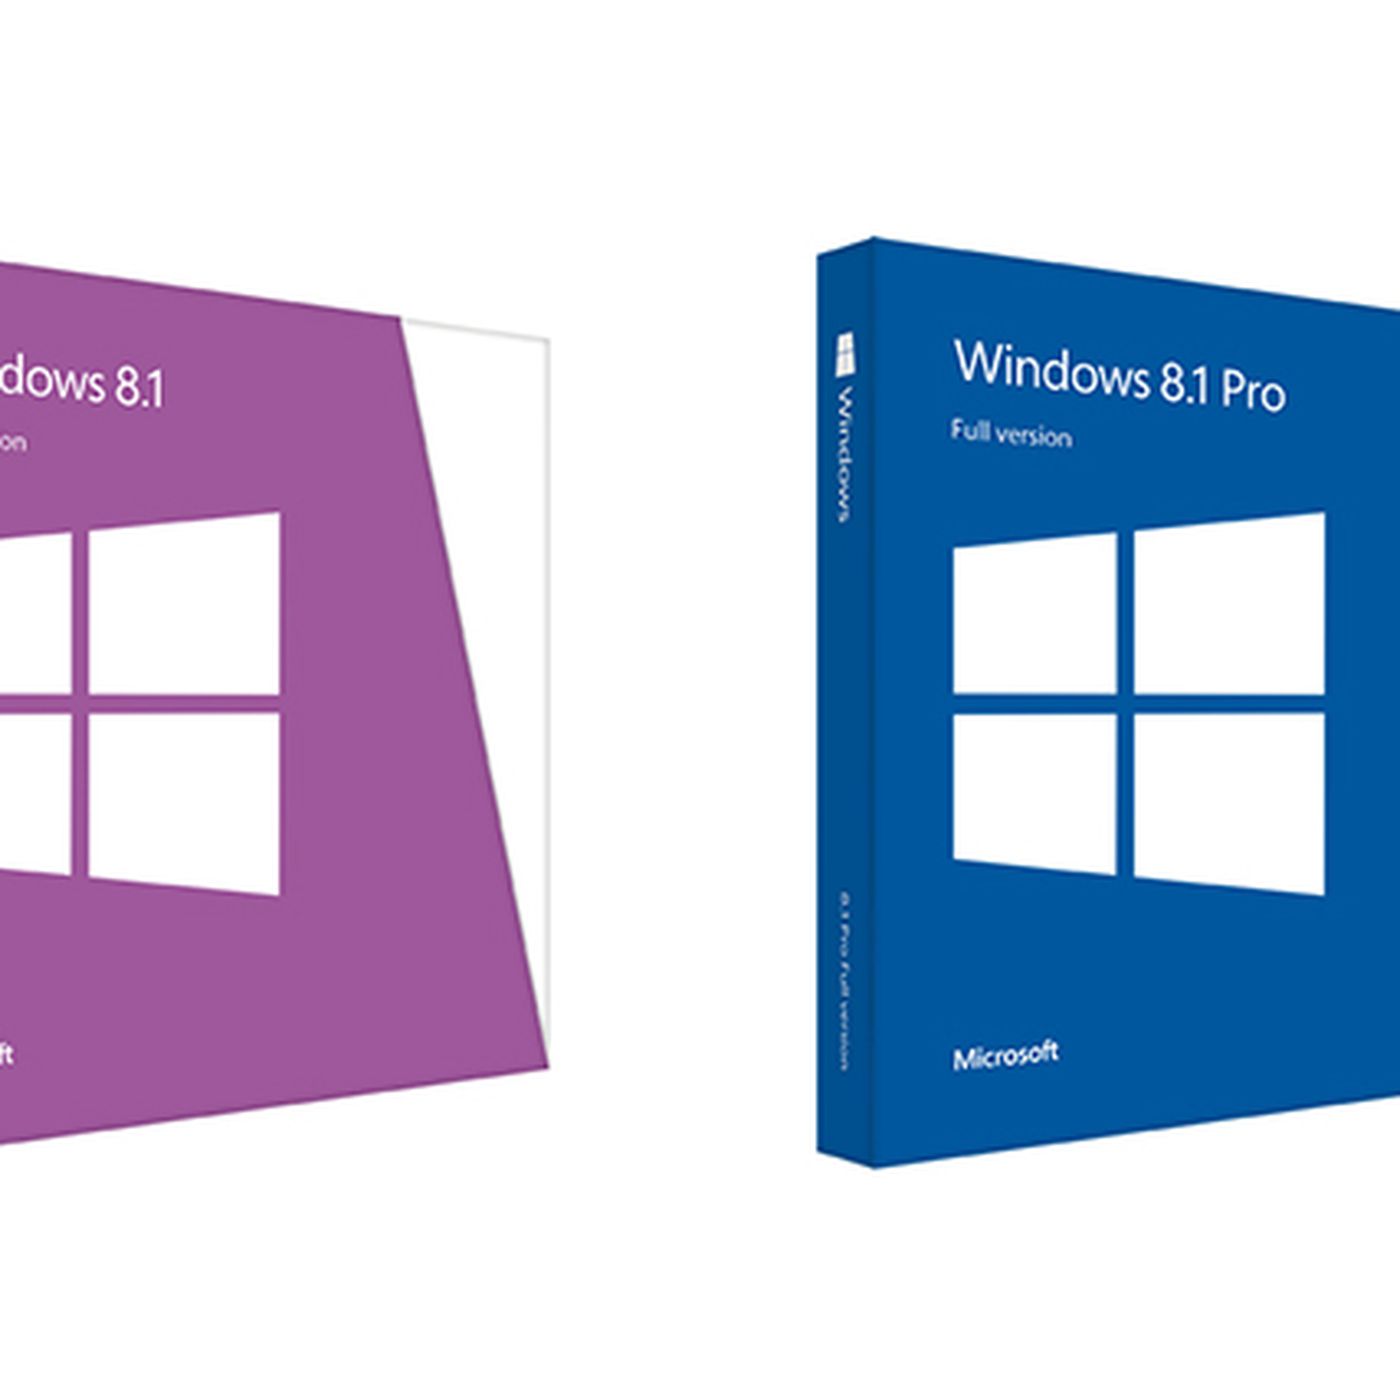 Verbeteren Afvoer verraad Windows 8.1 priced at $119, Microsoft brings back 'full version' for  everyone - The Verge